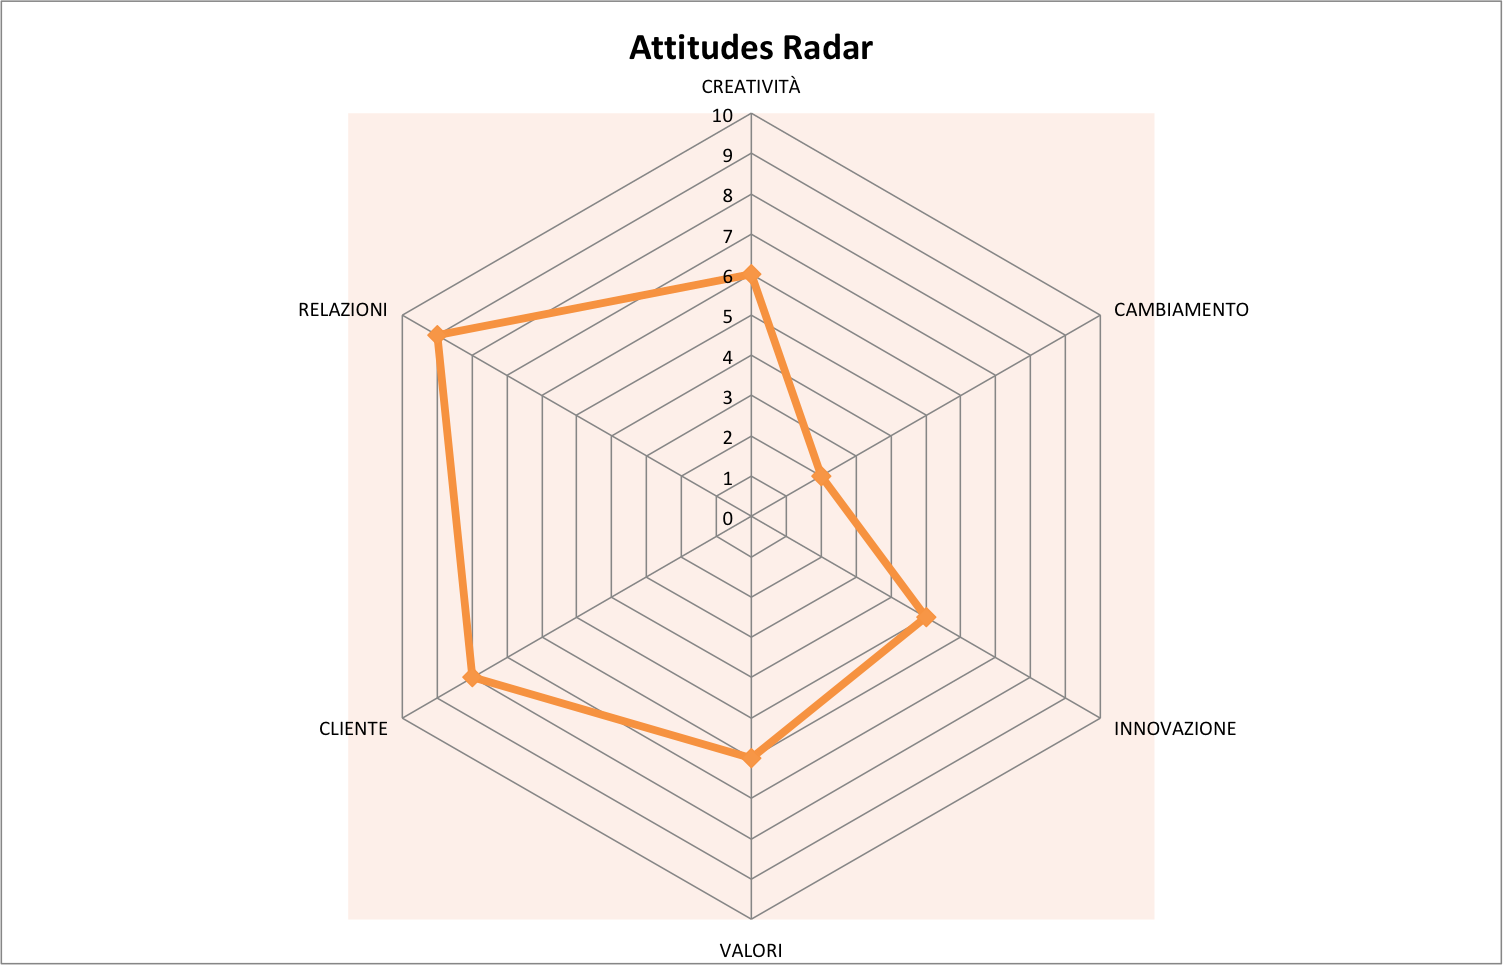 Attitudes Radar